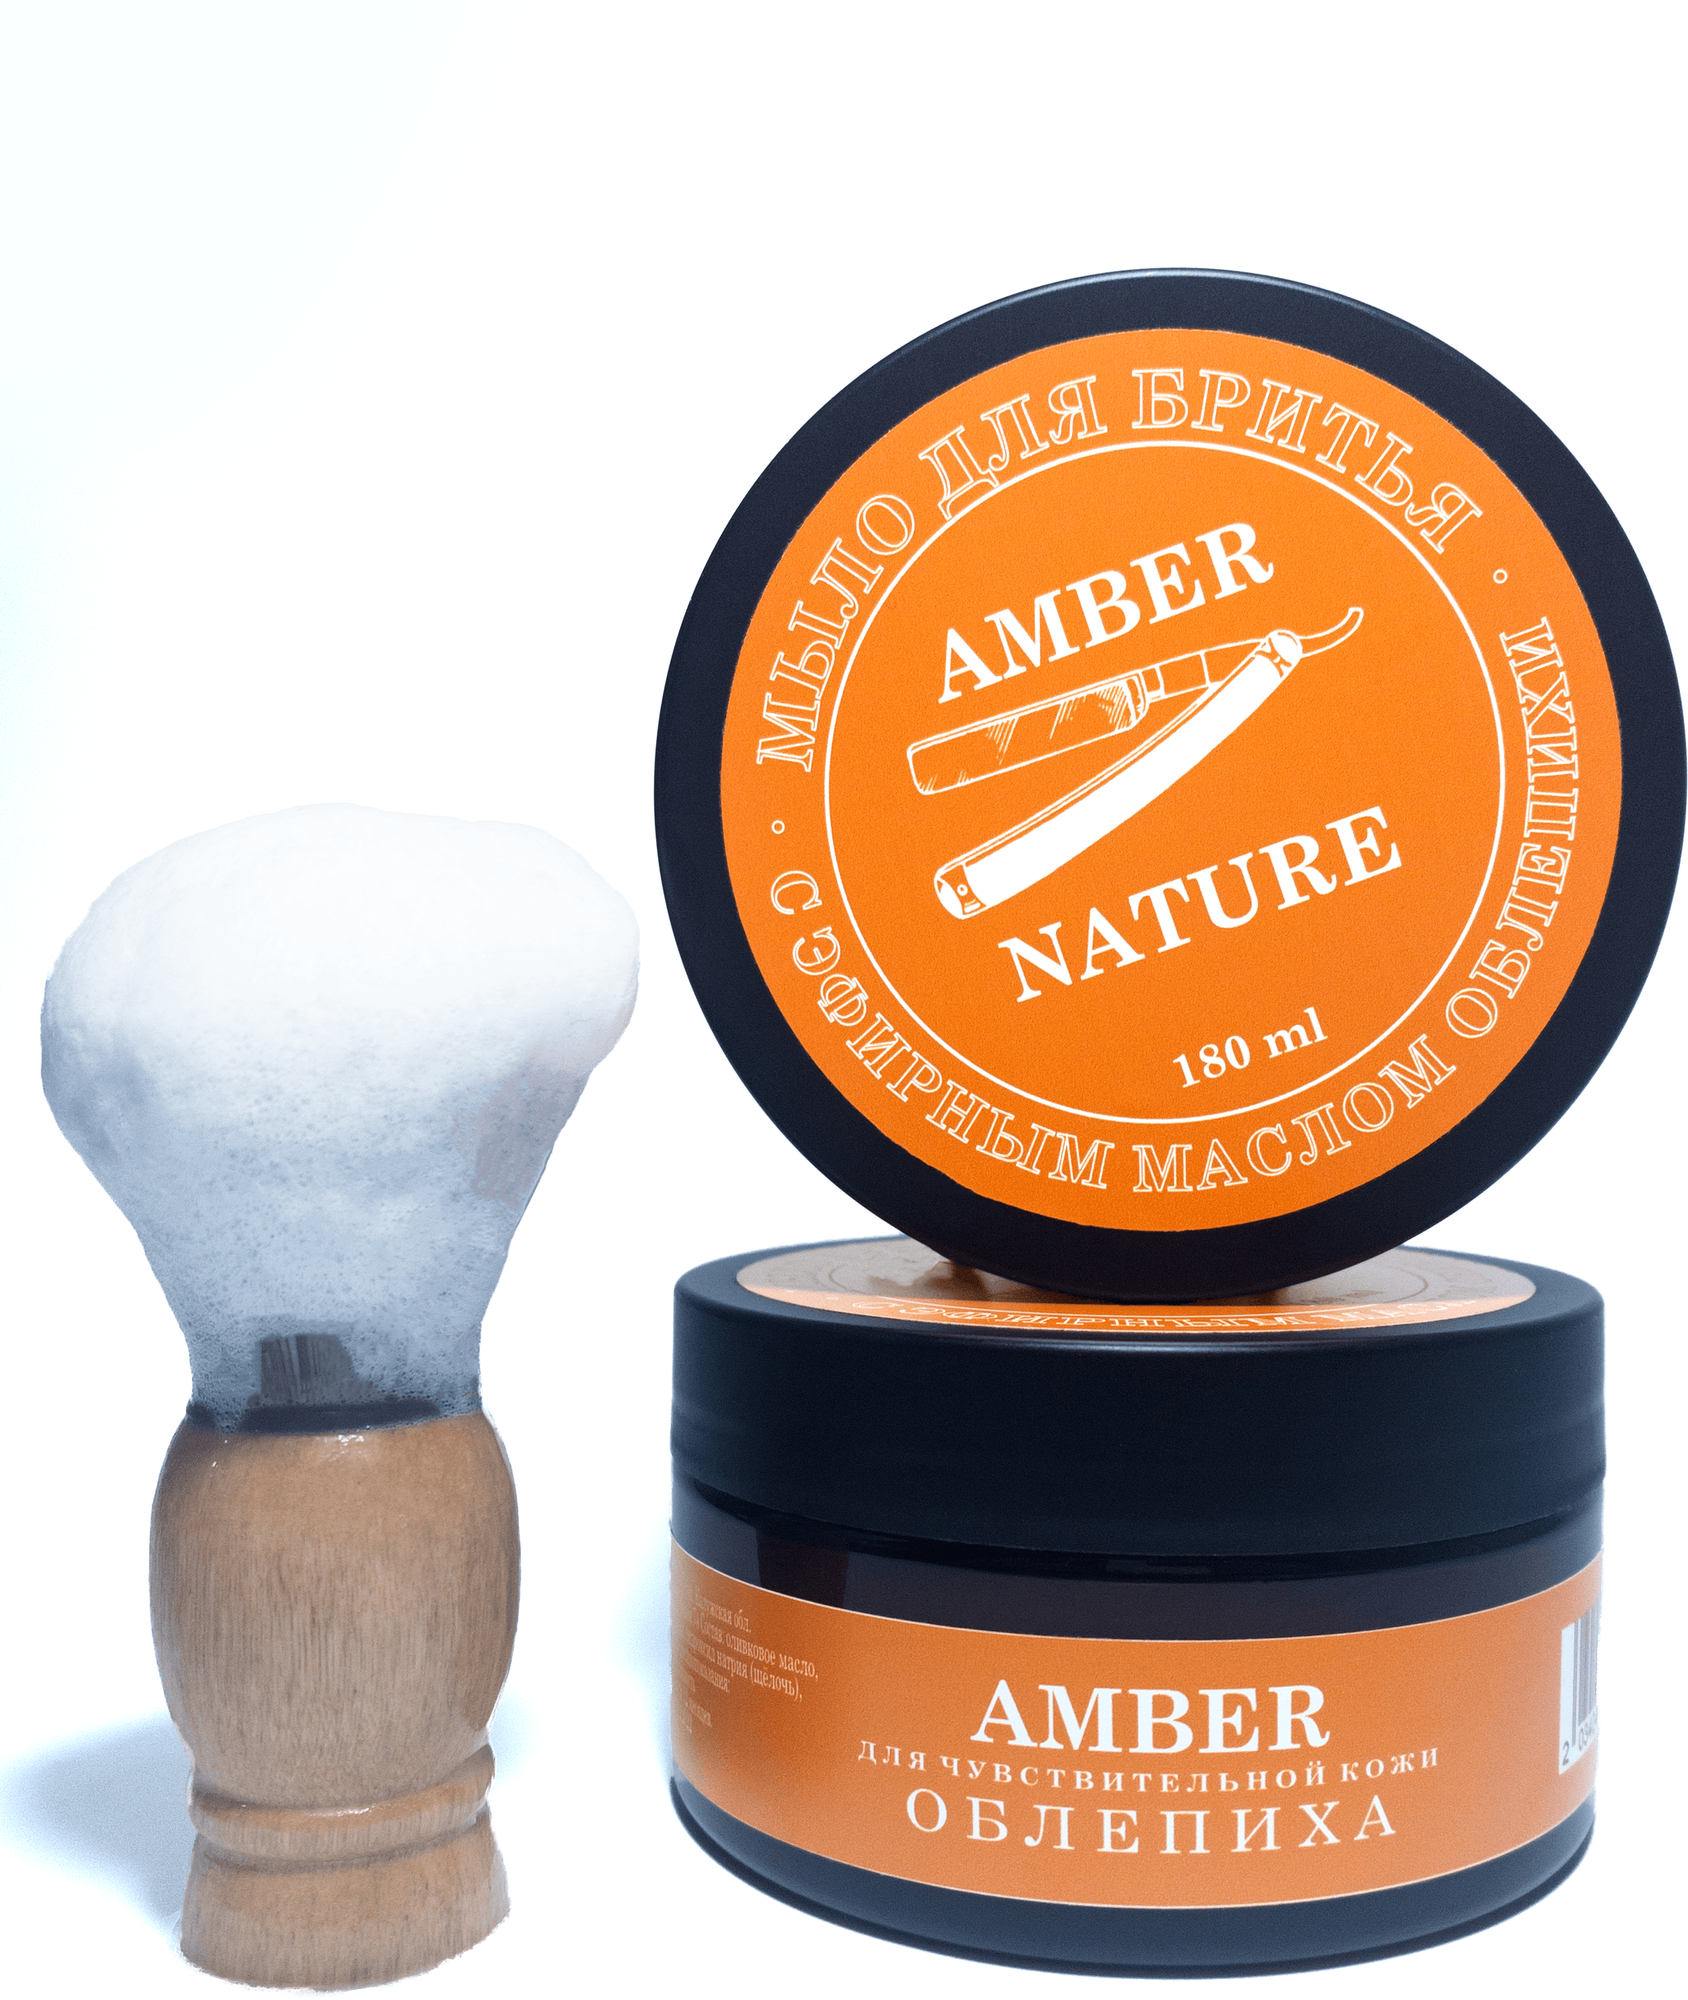 Amber Мыло для бритья натуральное с маслом облепихи 180 гр.